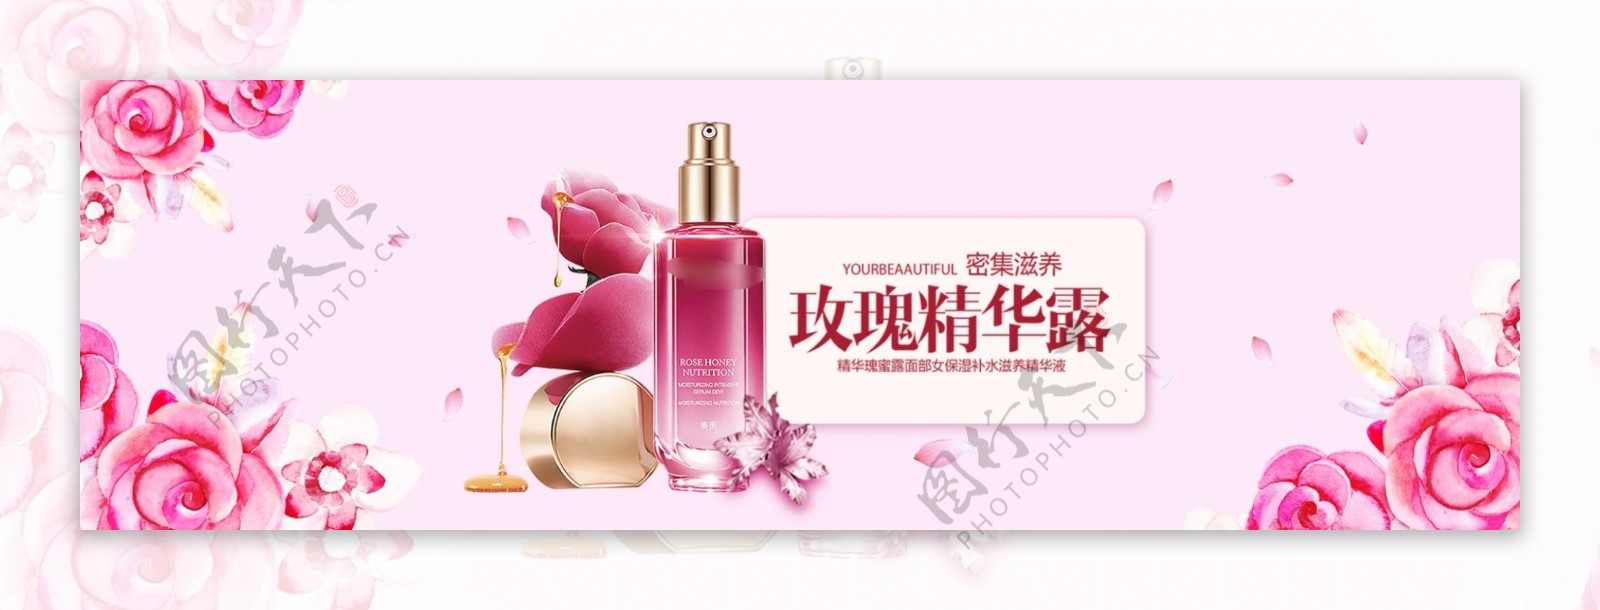 天猫秋季樱花背景粉色系化妆品海报